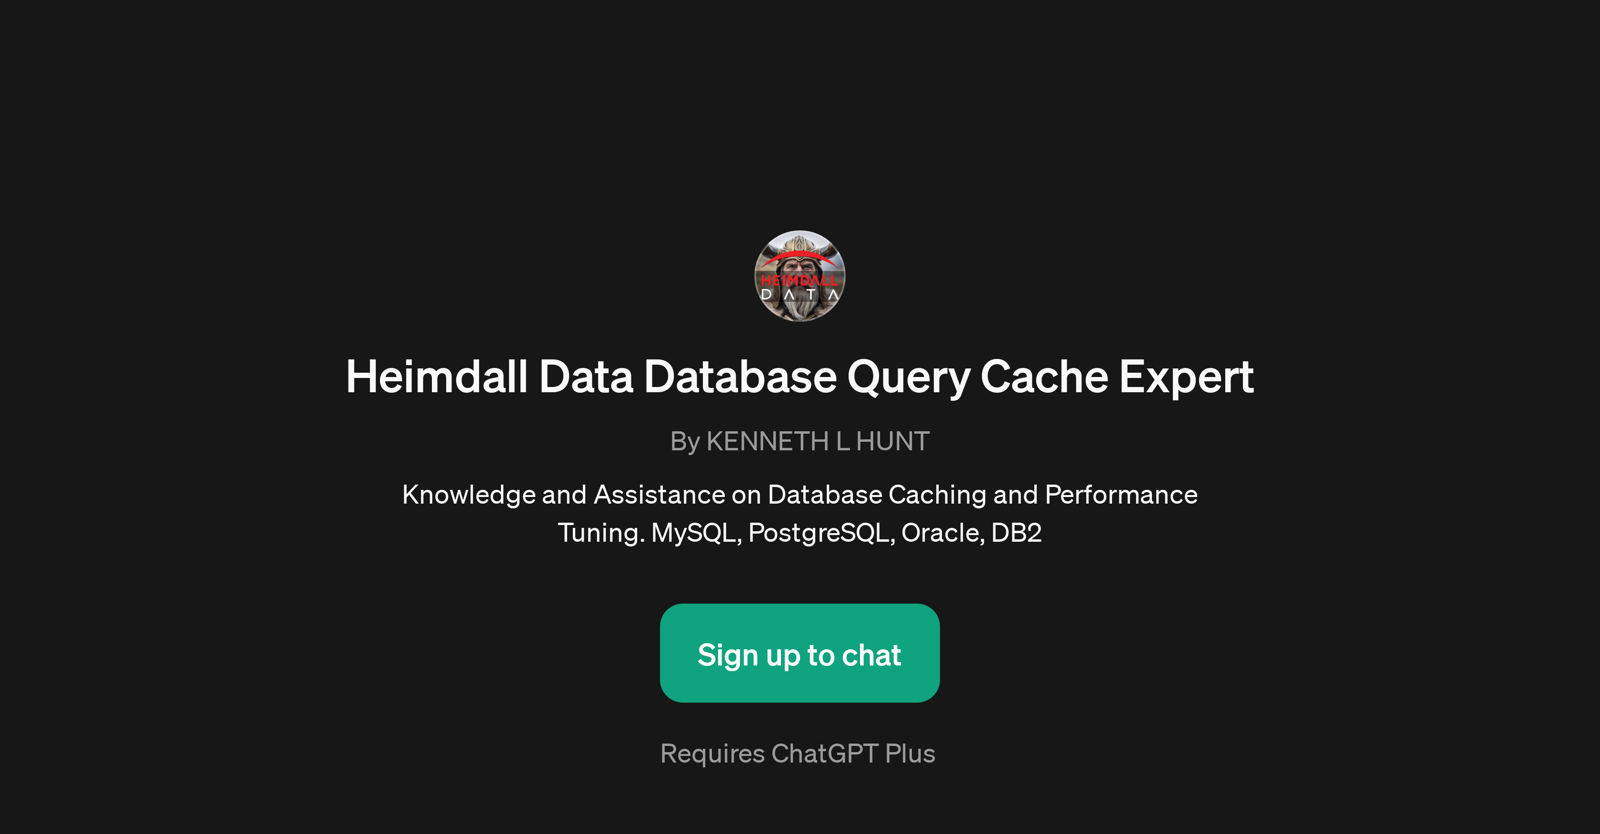 Heimdall Data Database Query Cache Expert website